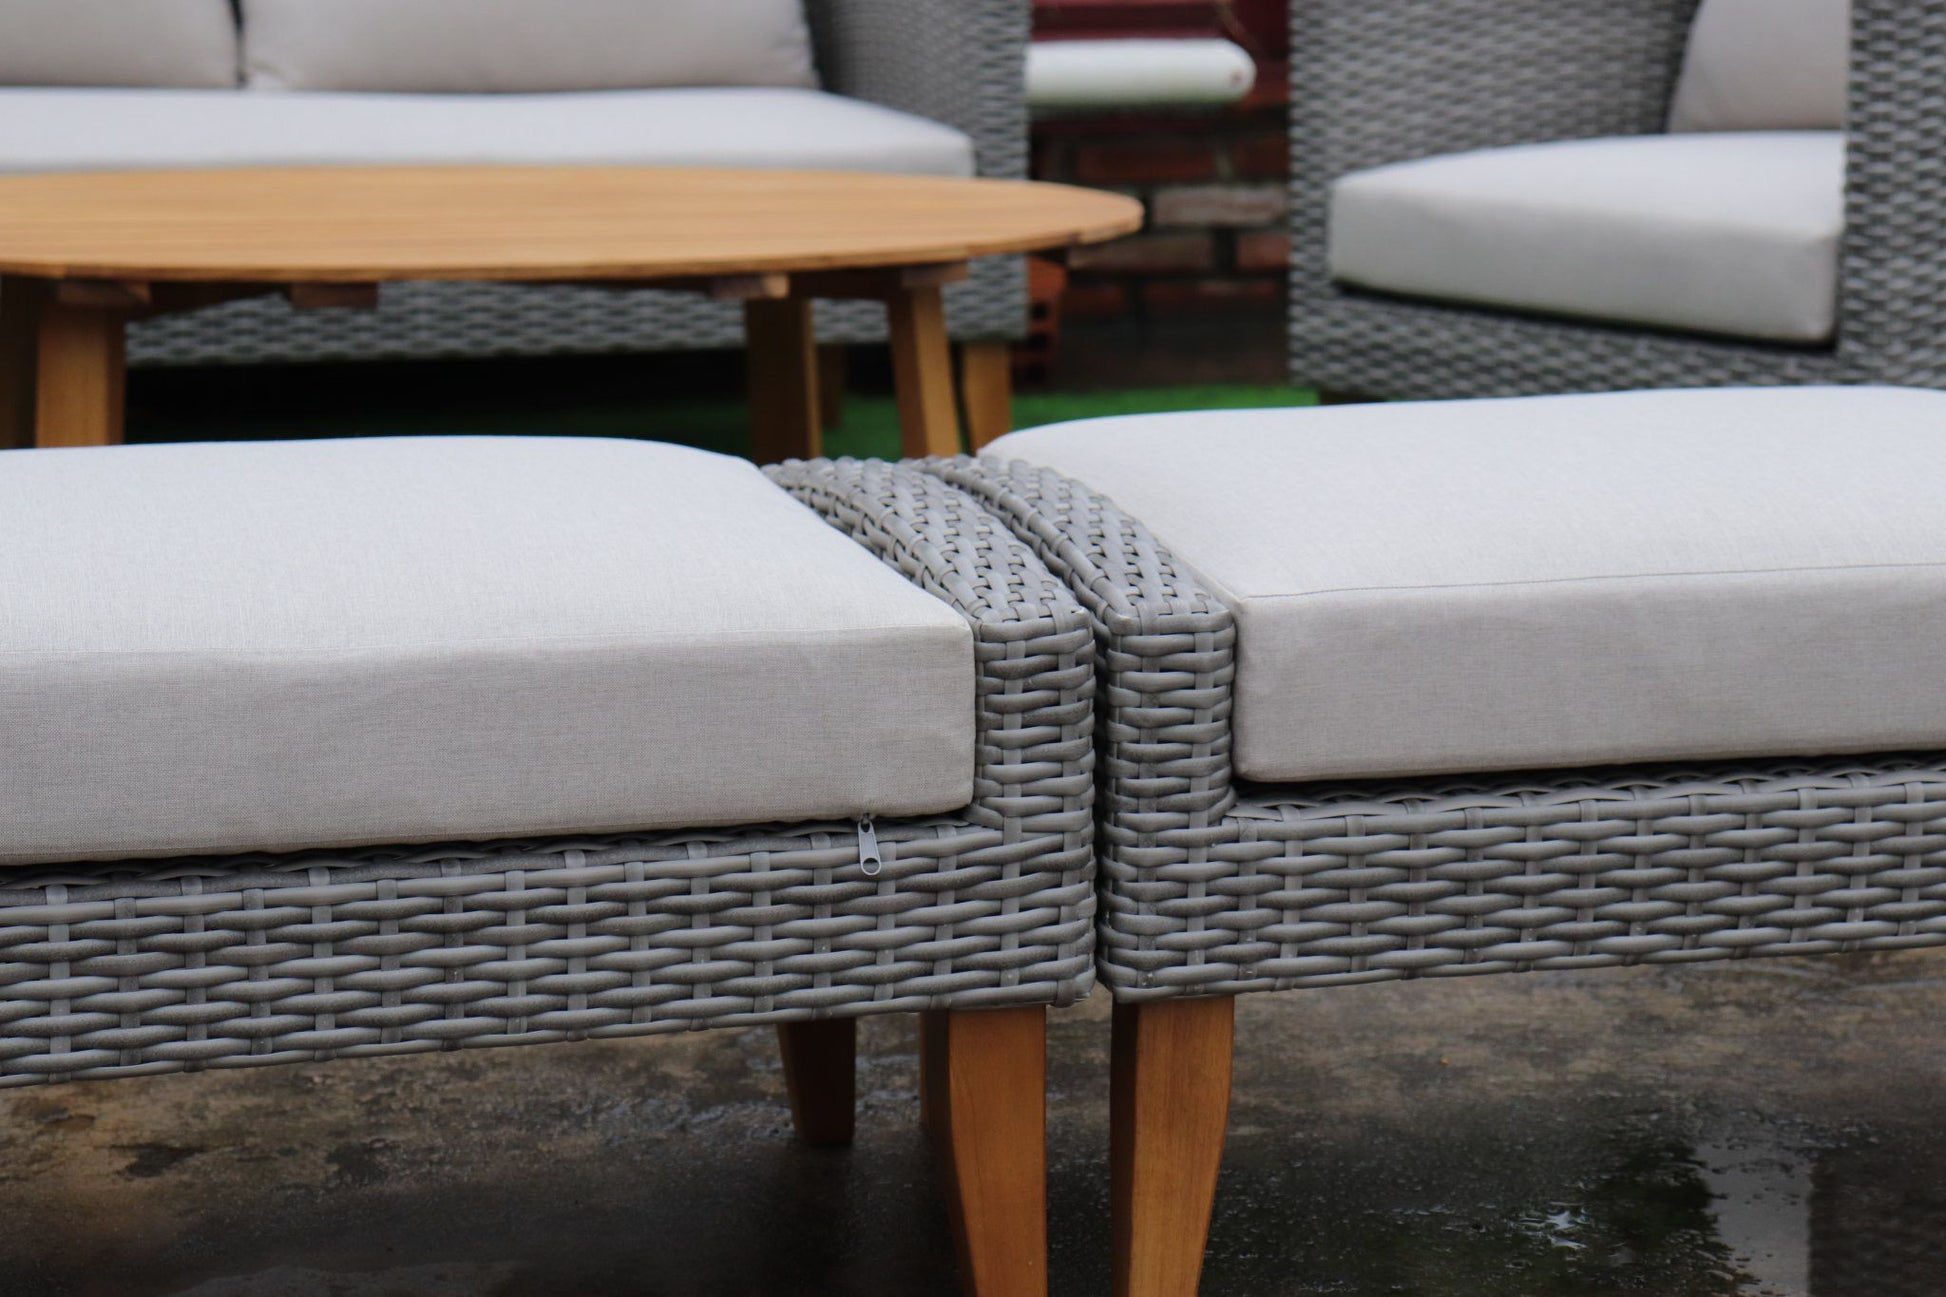 SIENA 6 Piece White + White Cushions Outdoor Lounge Set